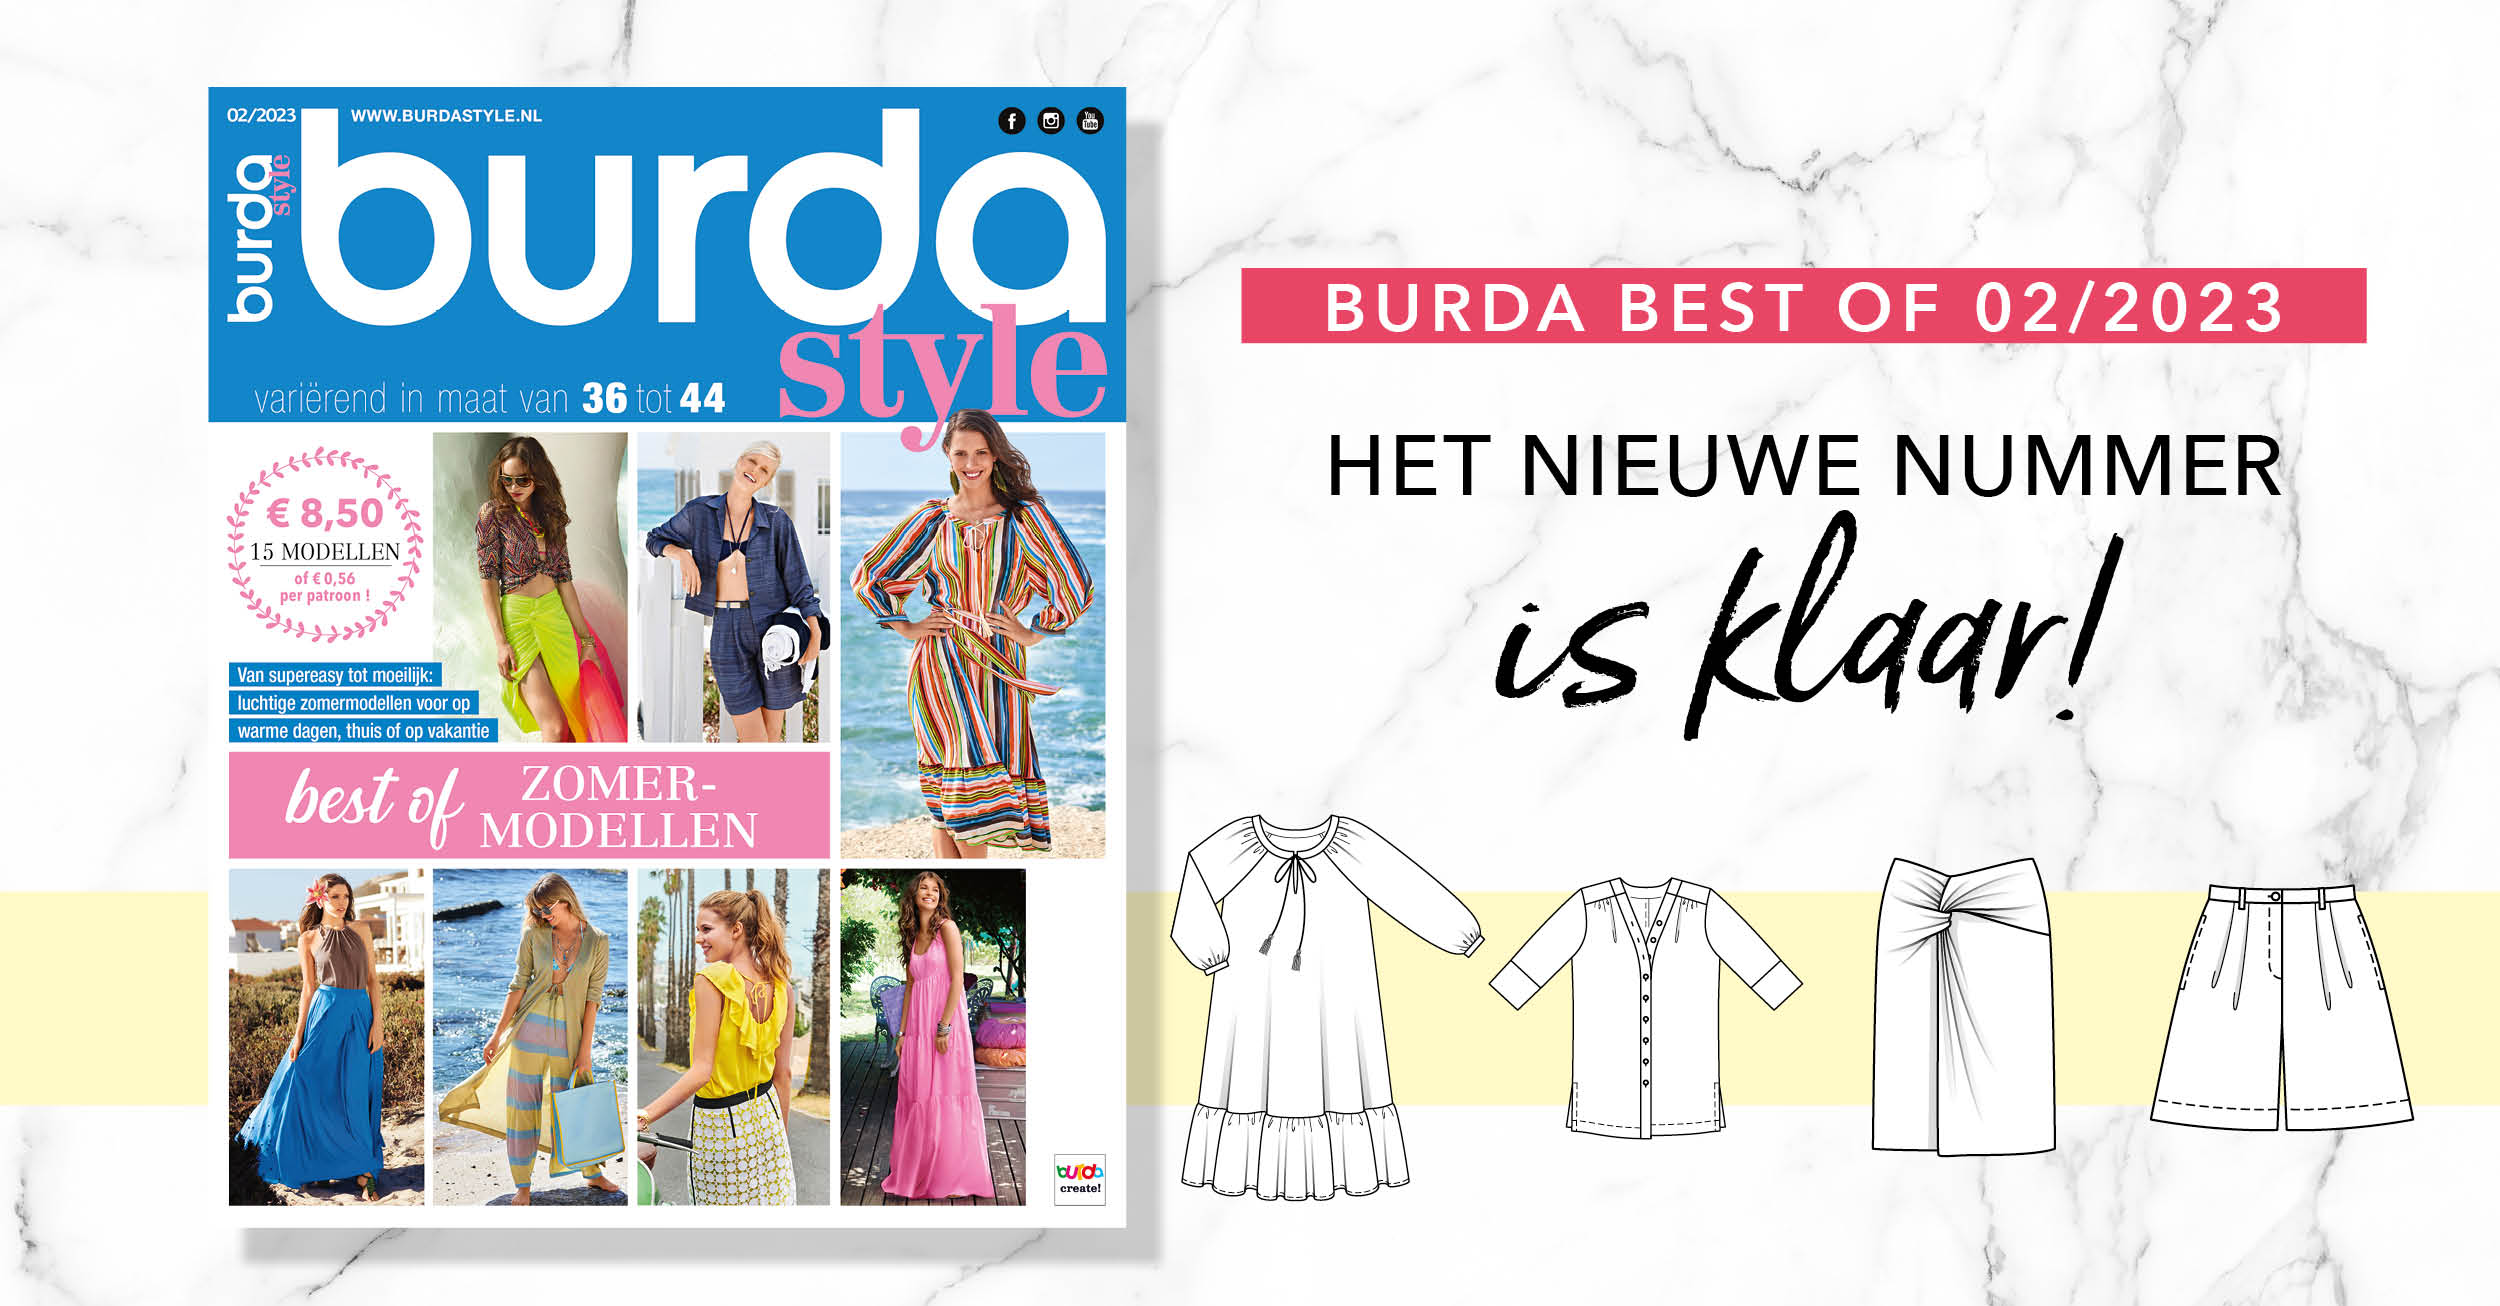 April 2023 : het nieuwe nummer van burda burda best of met zomermodellen is klaar!